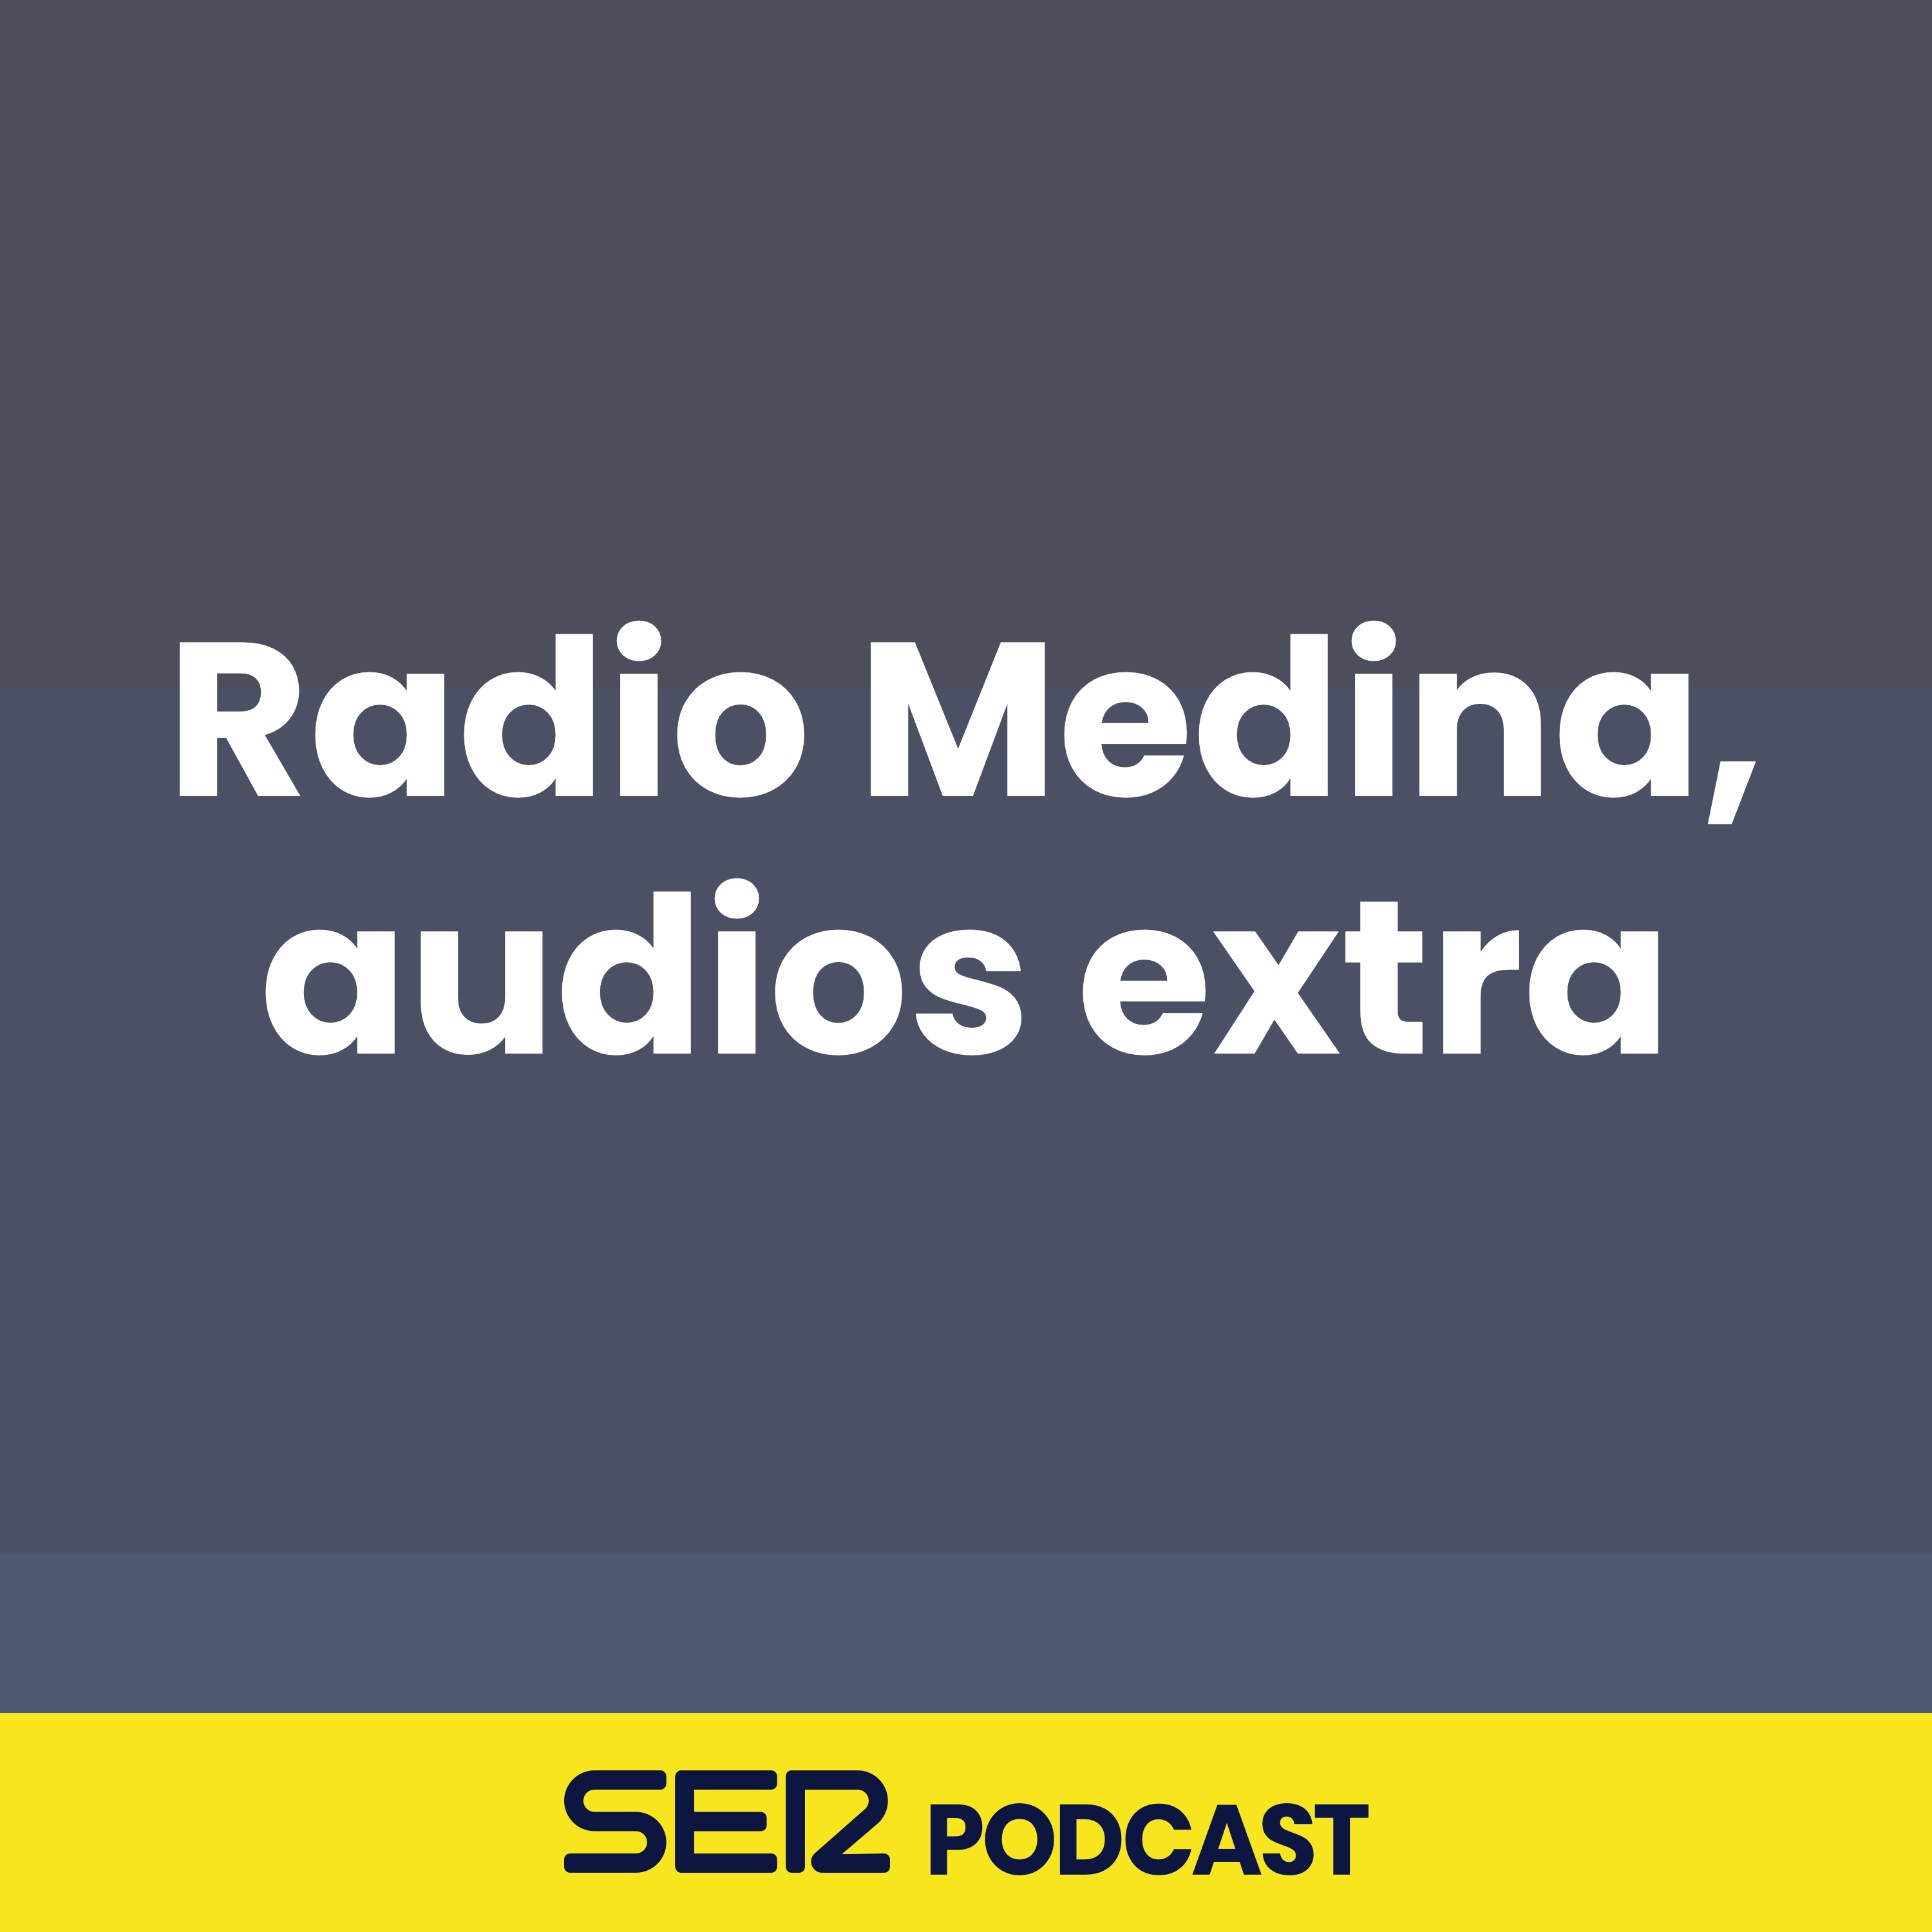 Radio Medina, audios extra